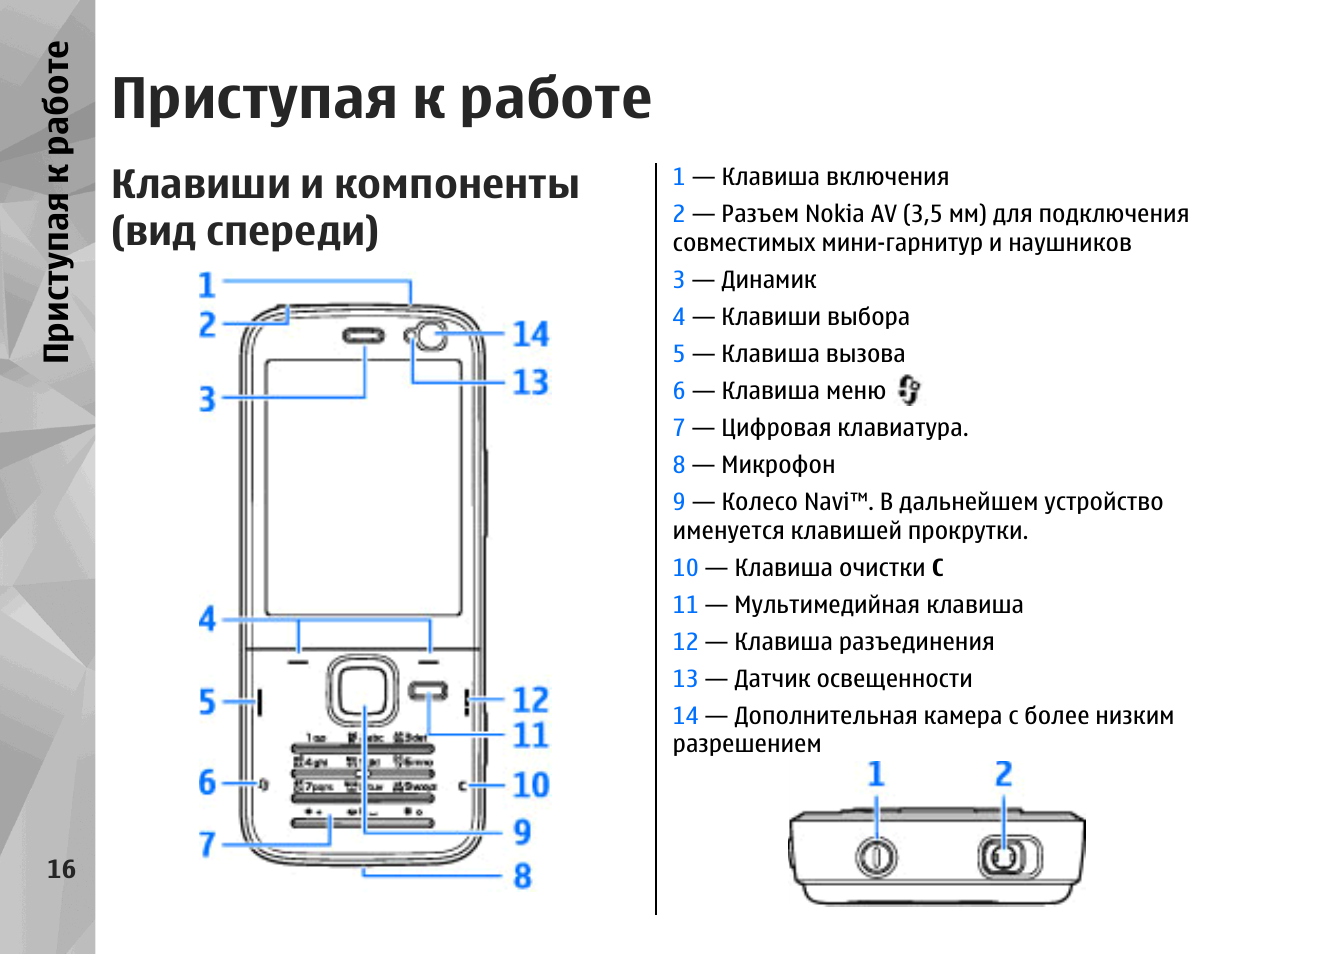 Телефоны нокиа инструкция. Nokia n78. Инструкция нокиа. Инструкция телефона нокиа. Nokia n78 инструкция.